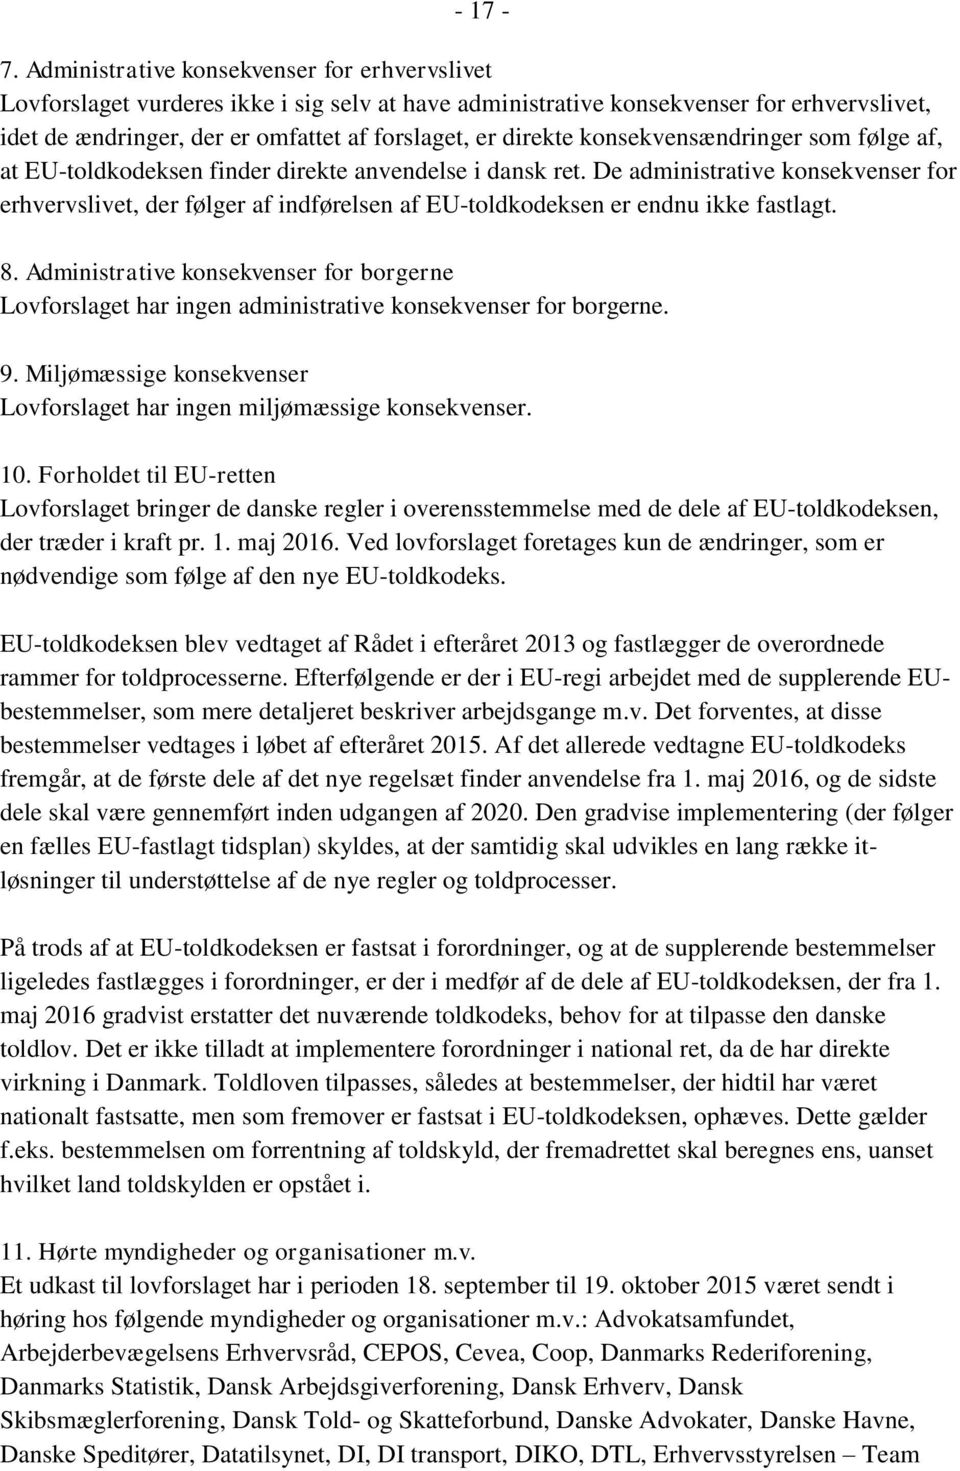 konsekvensændringer som følge af, at EU-toldkodeksen finder direkte anvendelse i dansk ret.